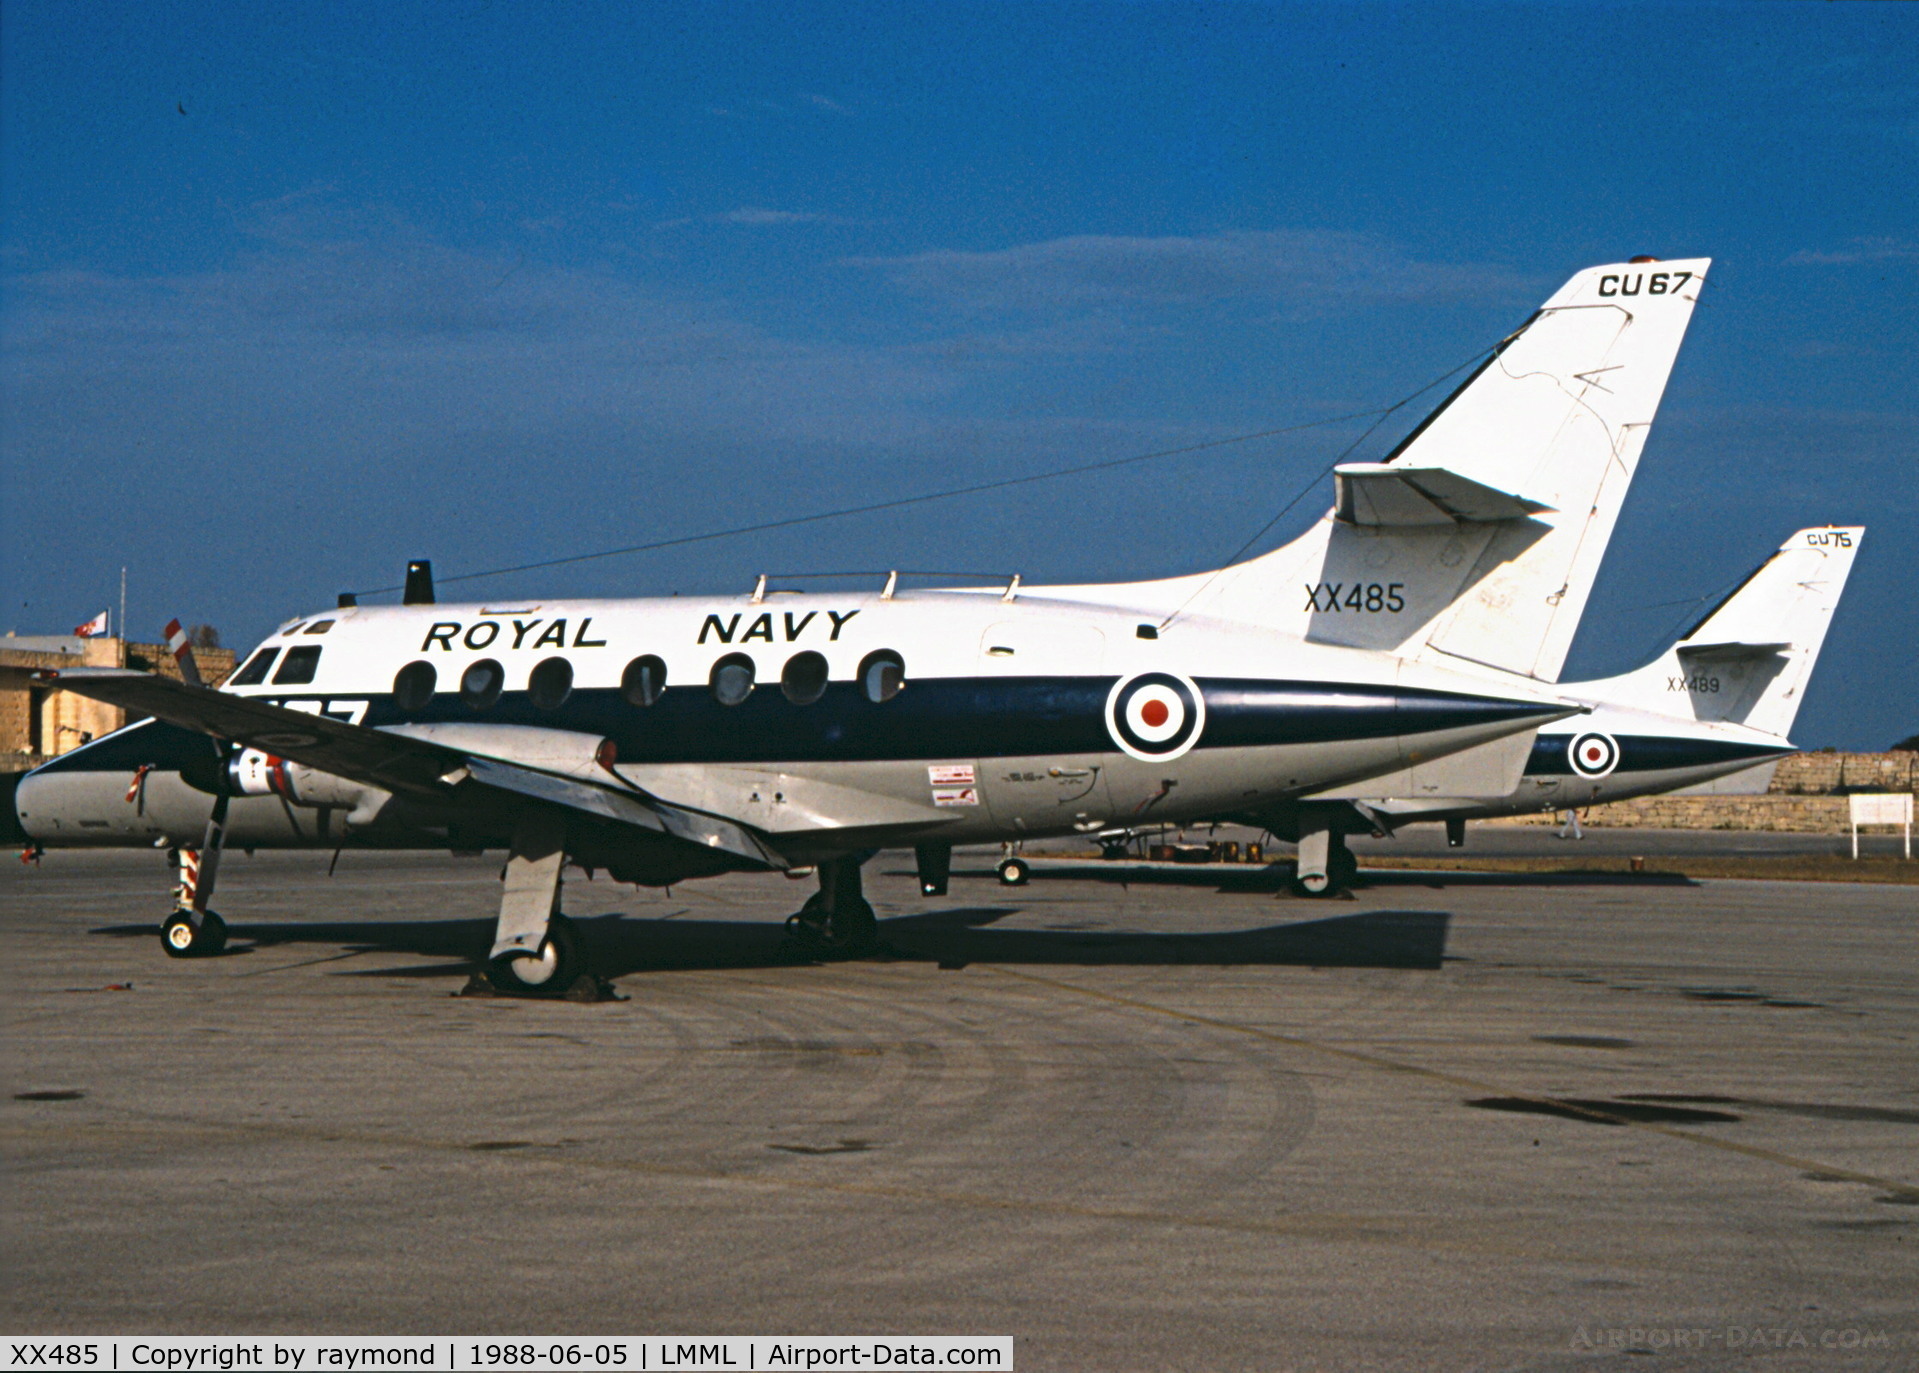 XX485, 1974 Scottish Aviation HP-137 Jetstream T.2 C/N 268, Jetstream XX485/567 NAS750 Royal Navy